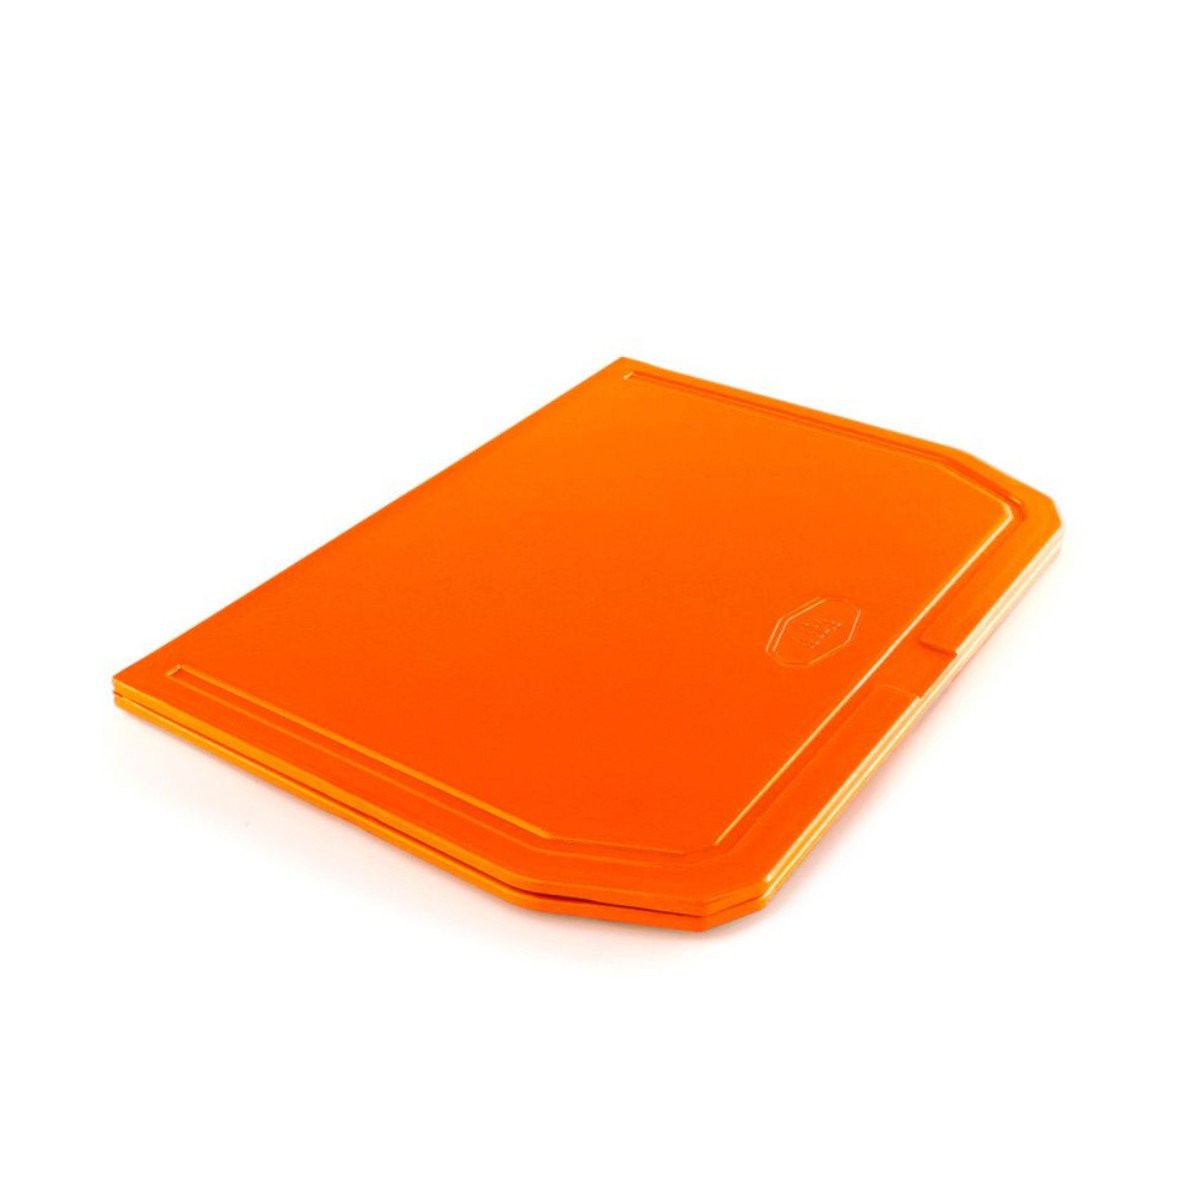 GSI Folding Cutting Board in Orange